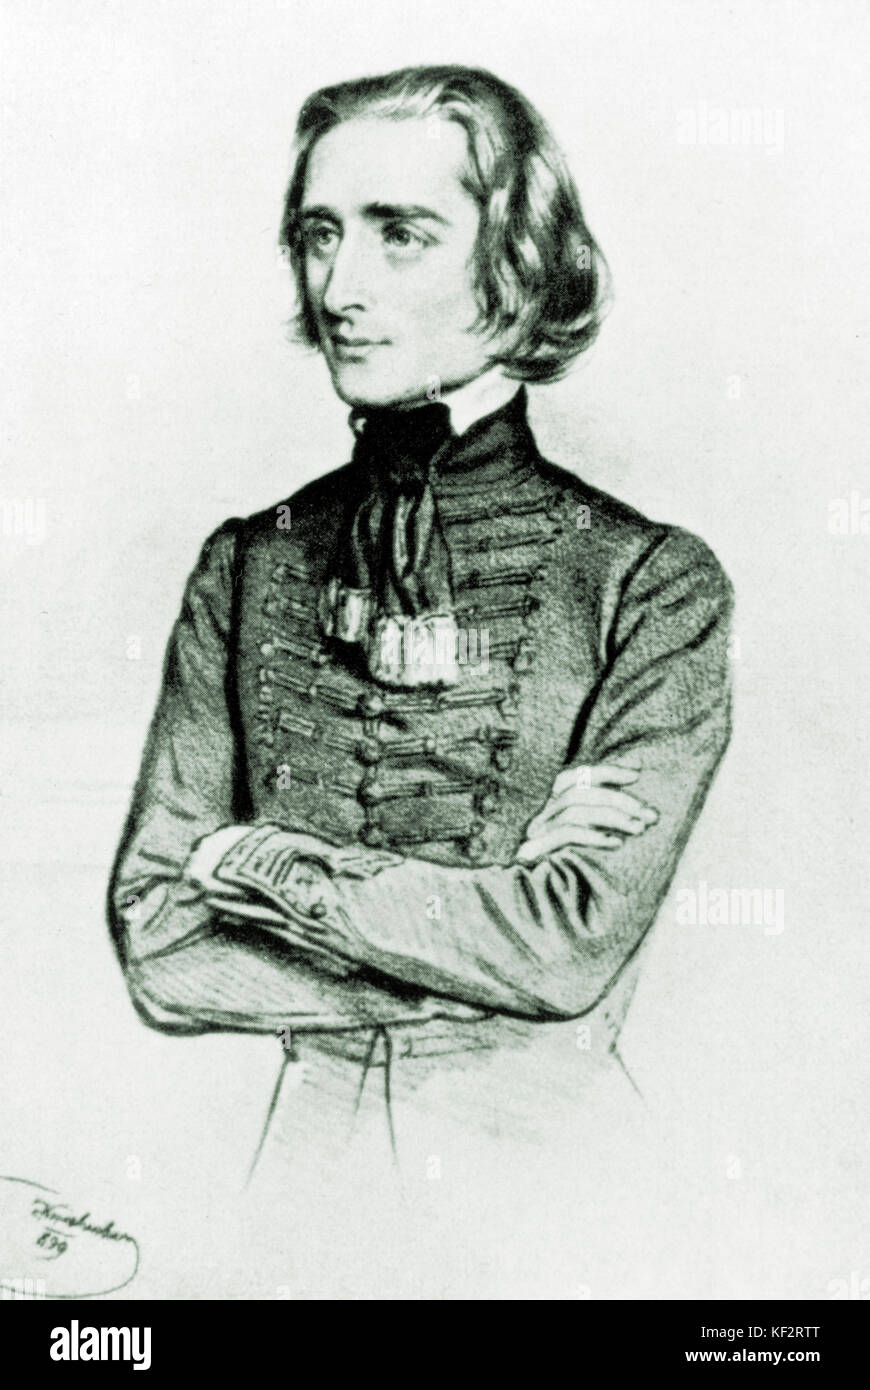 Franz Liszt (Ferencz) - portrait en costume national hongrois, par Kriehuber, 1840 - pianiste et compositeur hongrois. 22 octobre 1811 - 31 juillet 1886. Banque D'Images